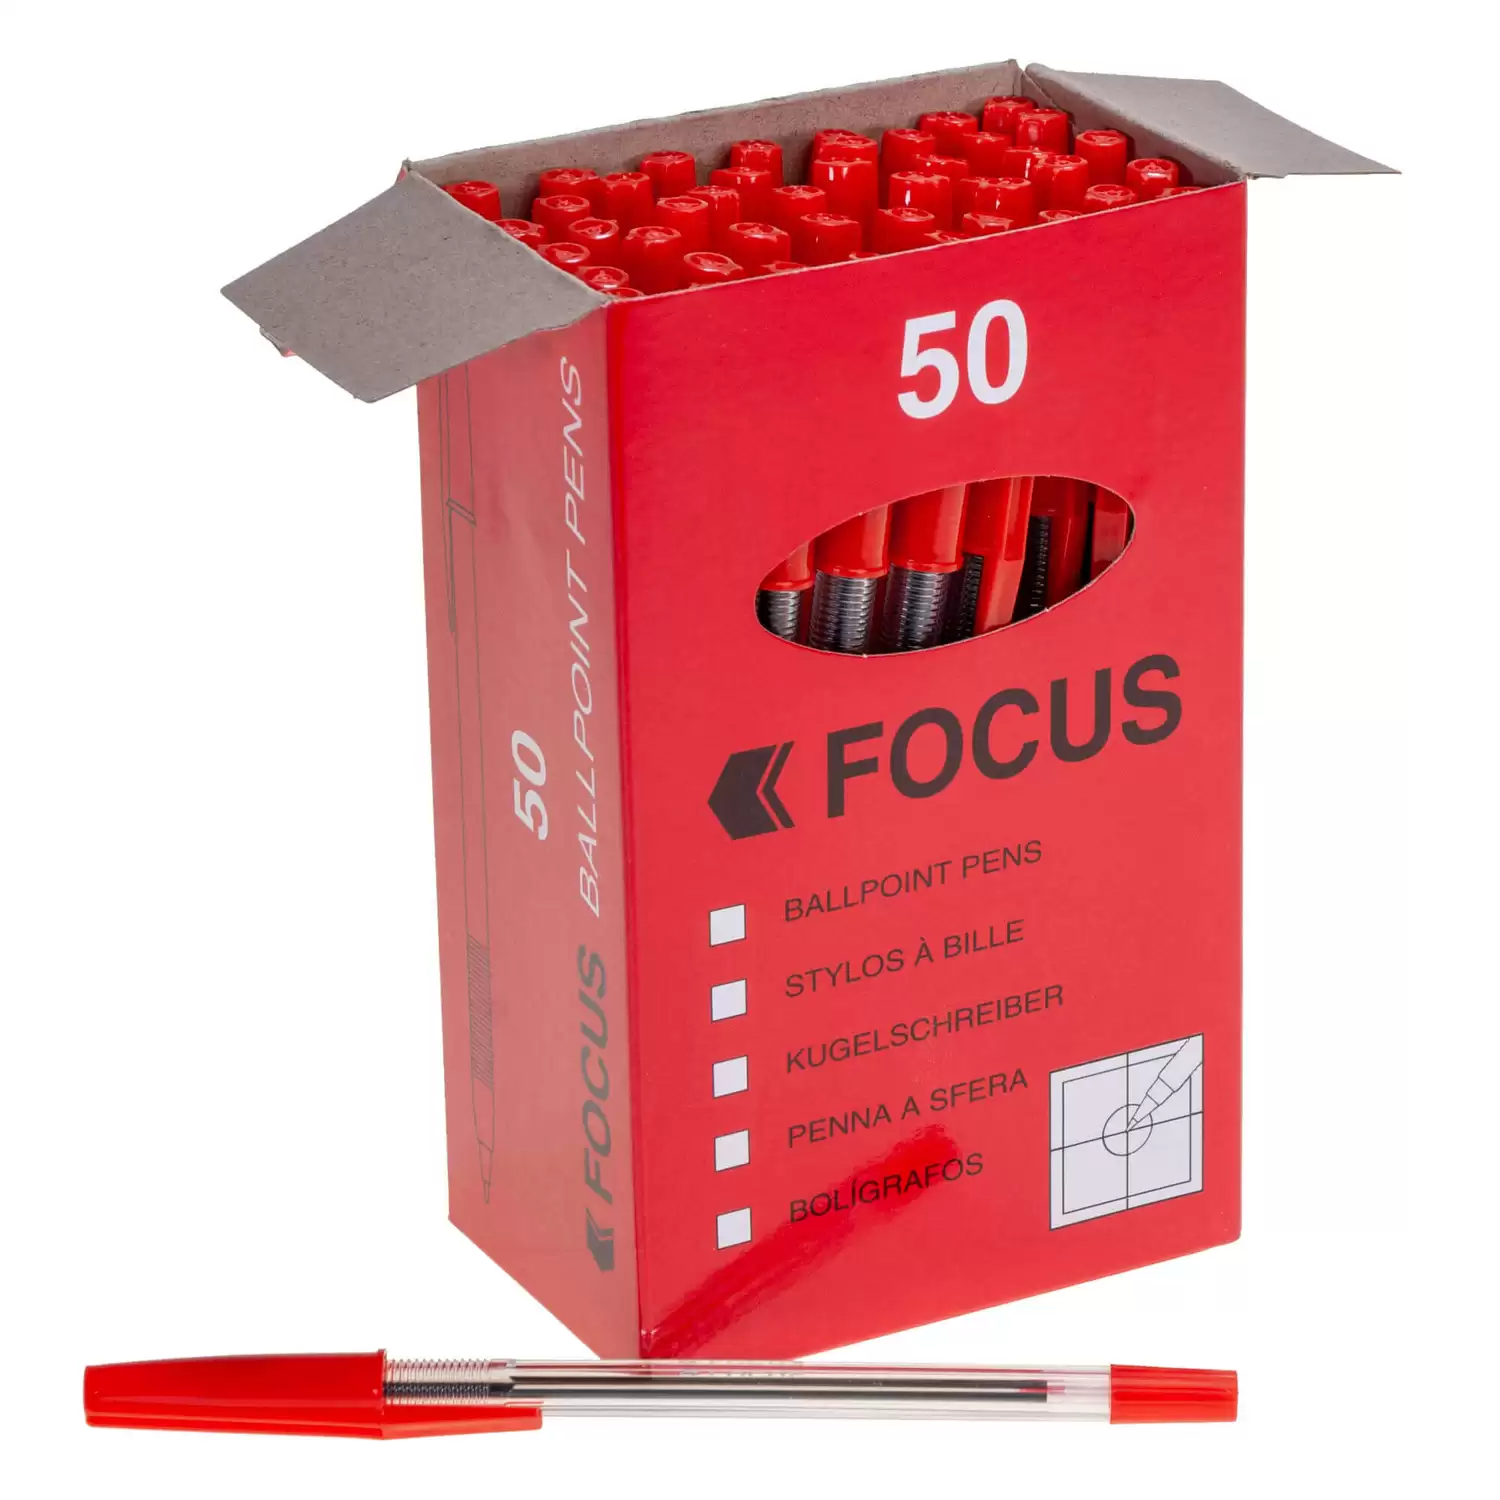 Medium Ballpoint Pen 50 Pack - Gompels - Care & Nursery Supply